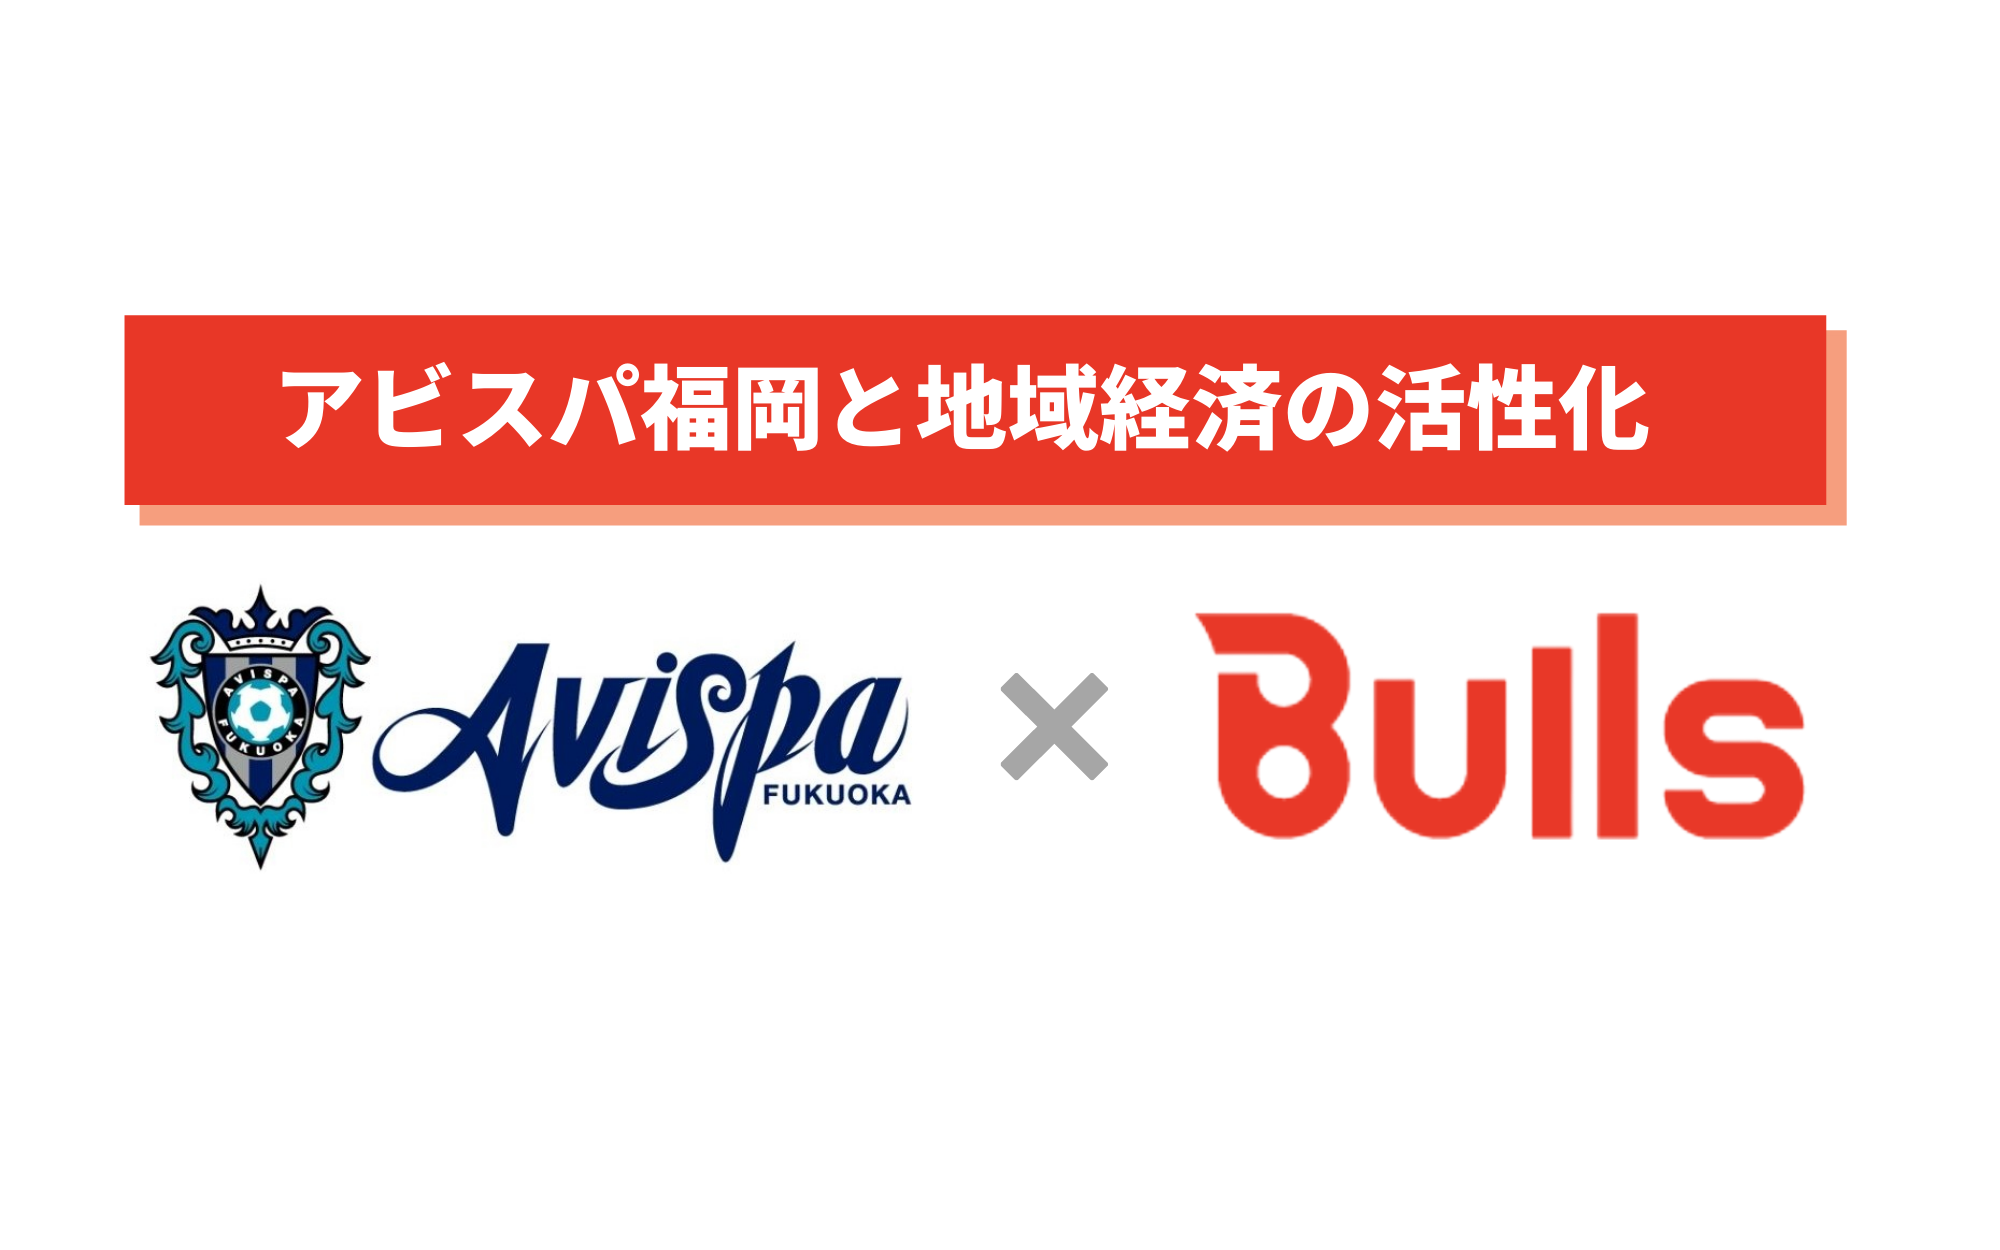 九州 福岡を盛り上げる 株式会社bulls アビスパ福岡とのスポンサー契約へ 株式会社bullsのプレスリリース